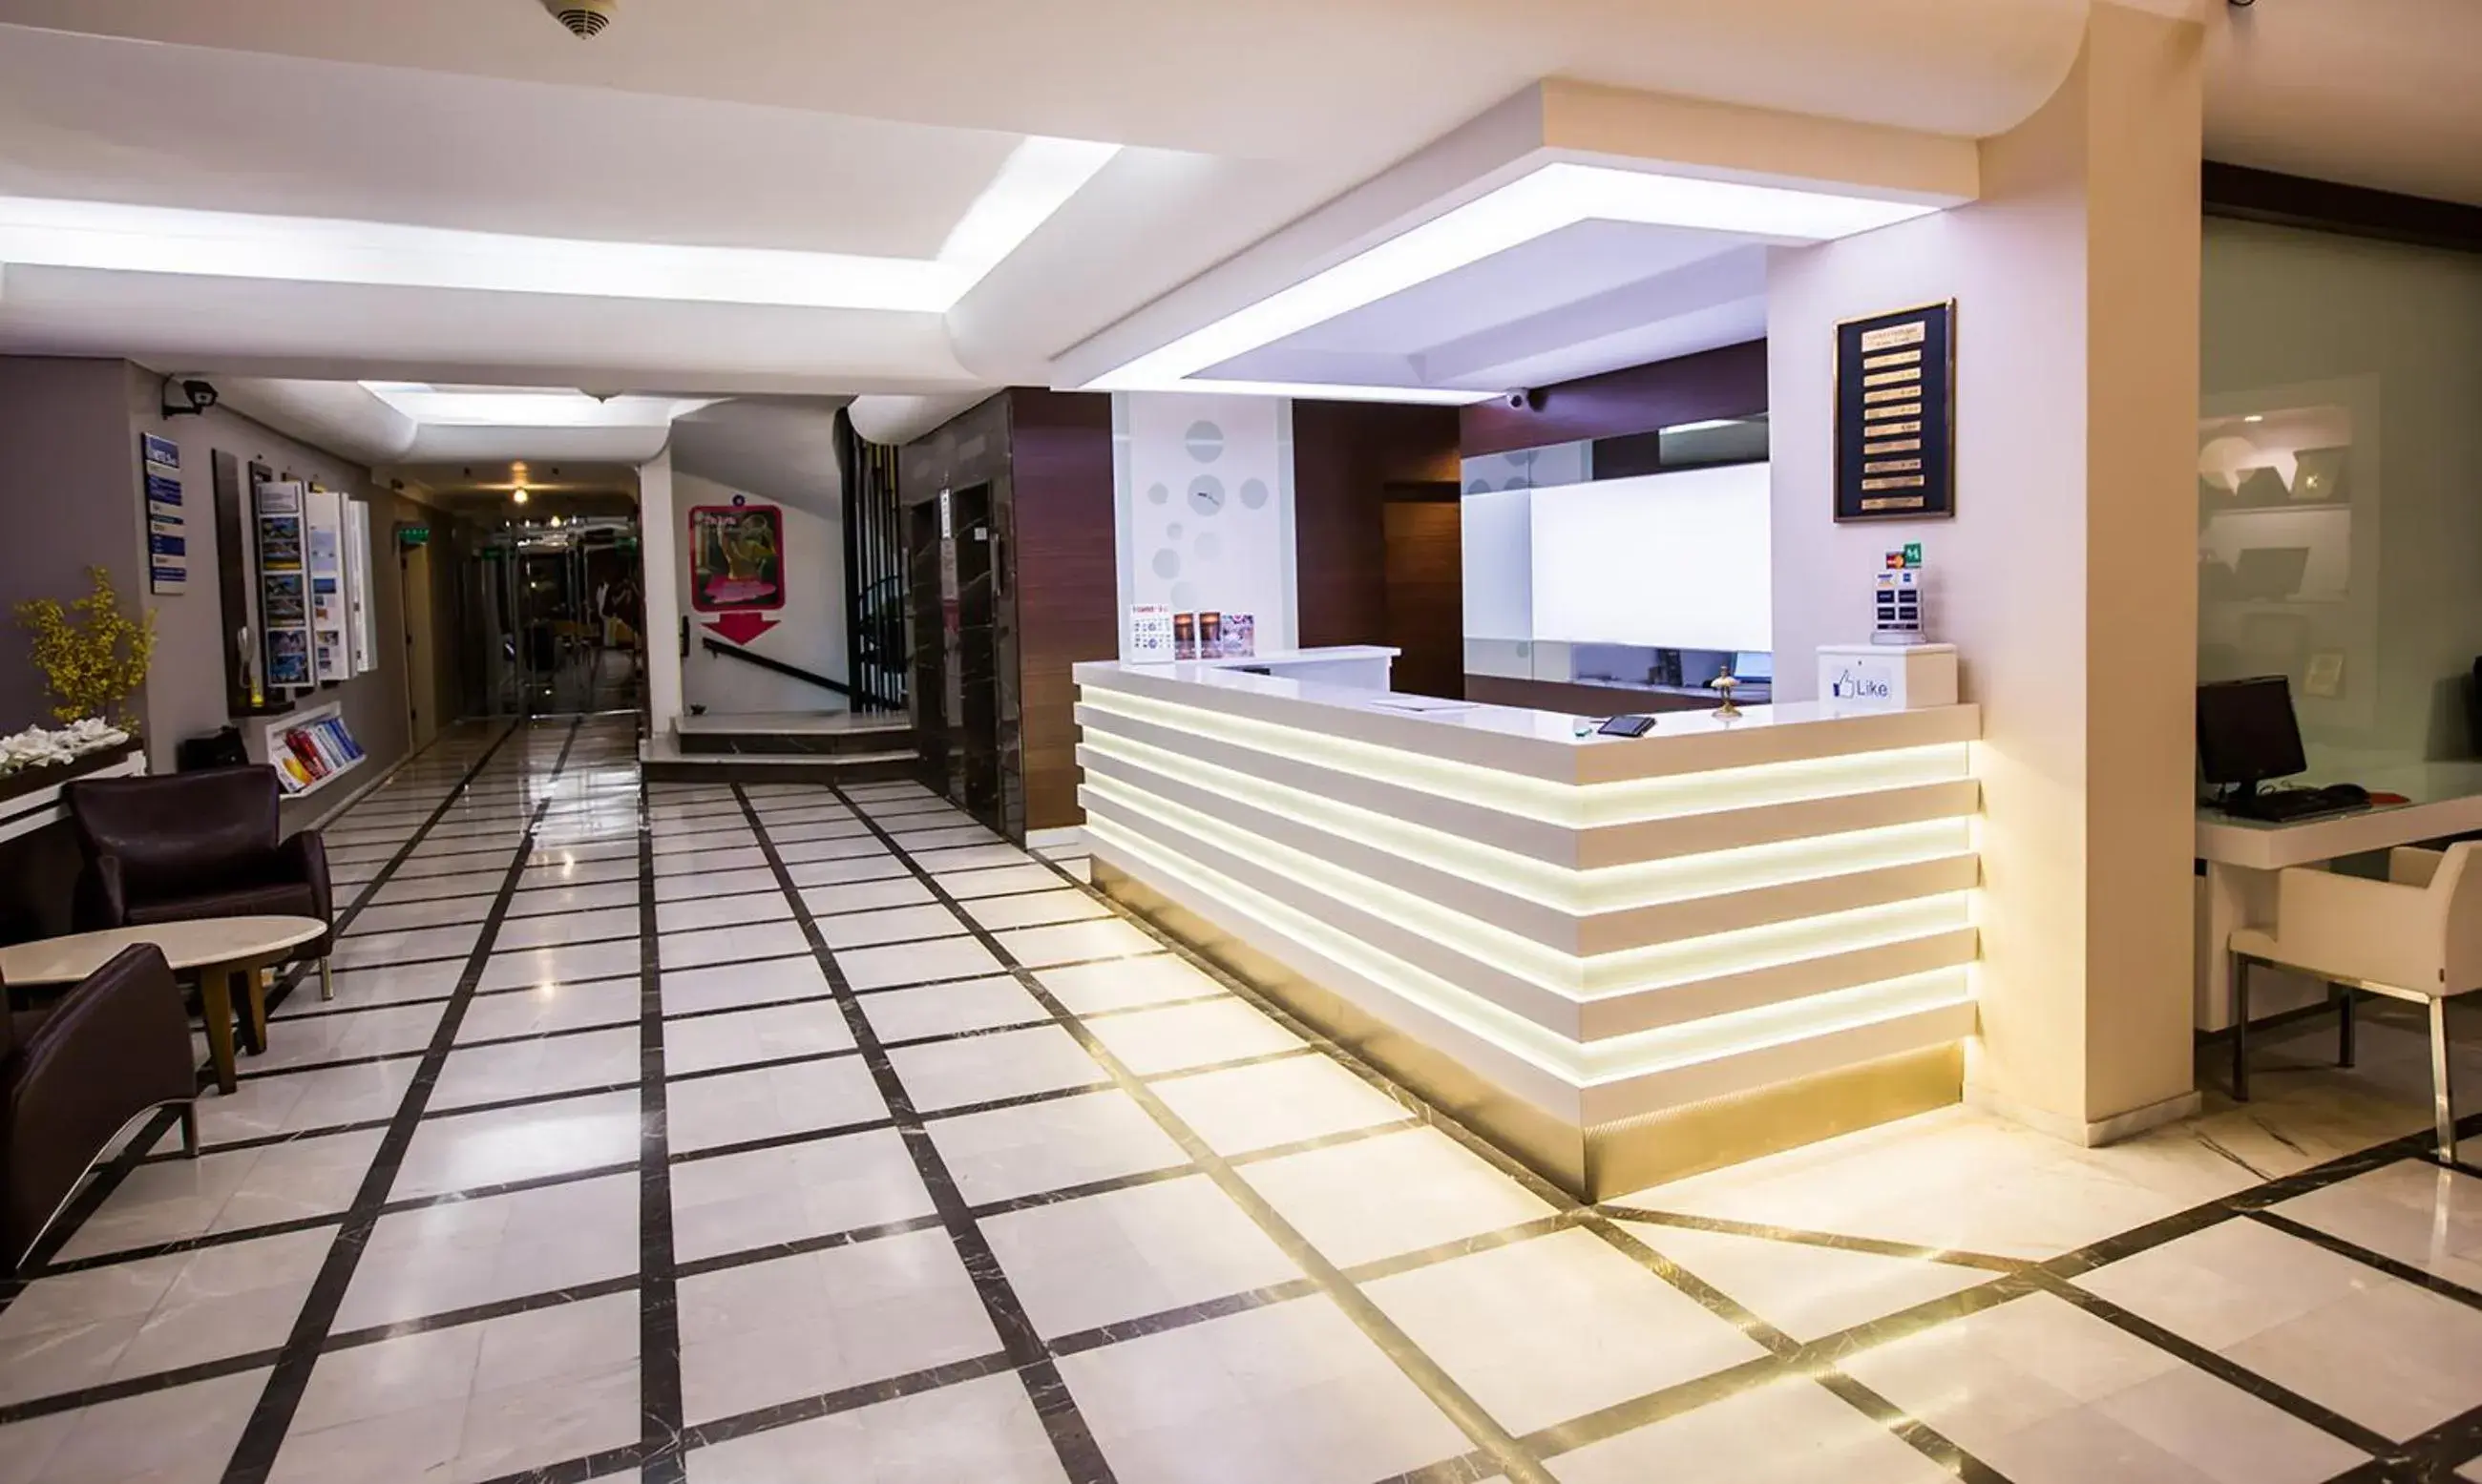 Lobby or reception, Lobby/Reception in Derici Hotel